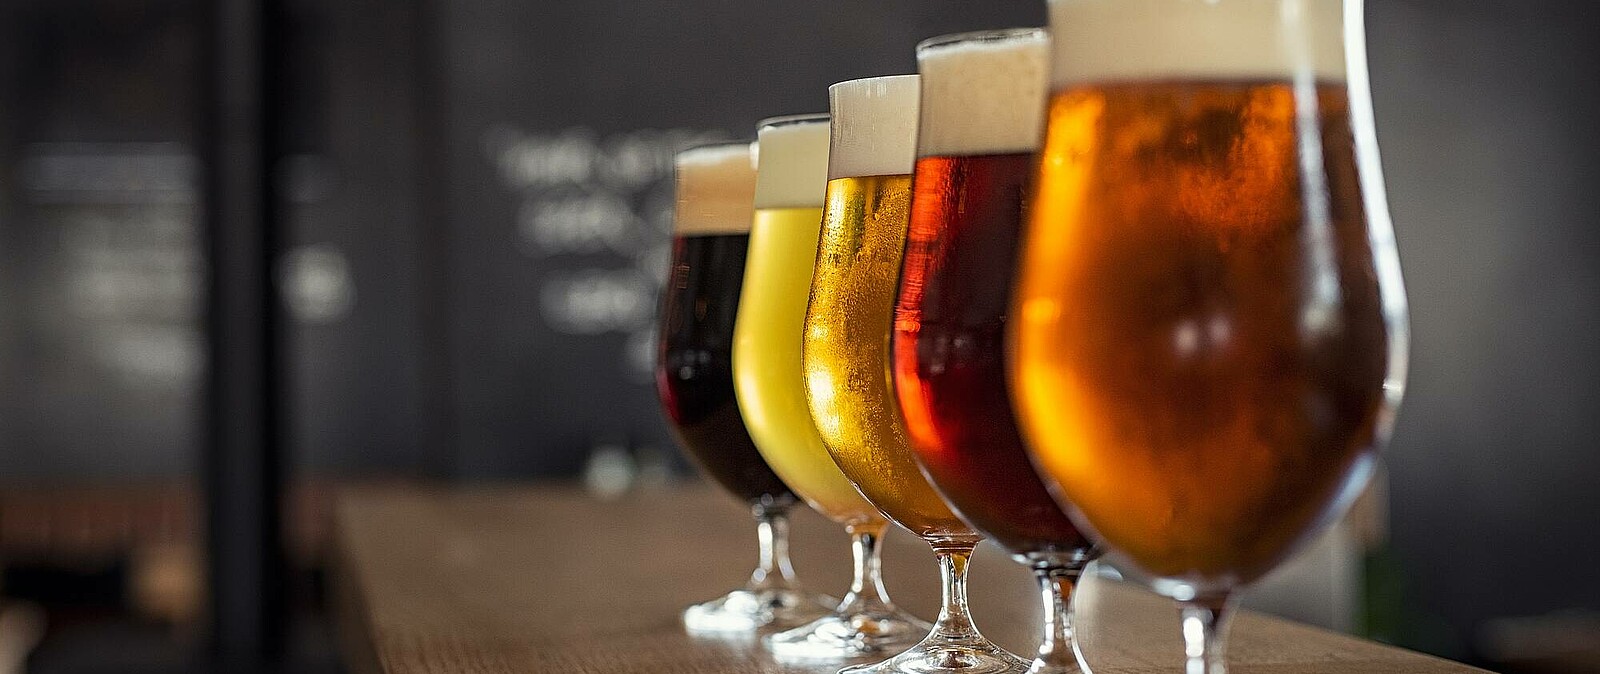 Erleben Sie eine Geschmacksexplosion der sächsischen Handwerksbiere, welche unser Biersommelier Ihnen genussvoll näher bringt.